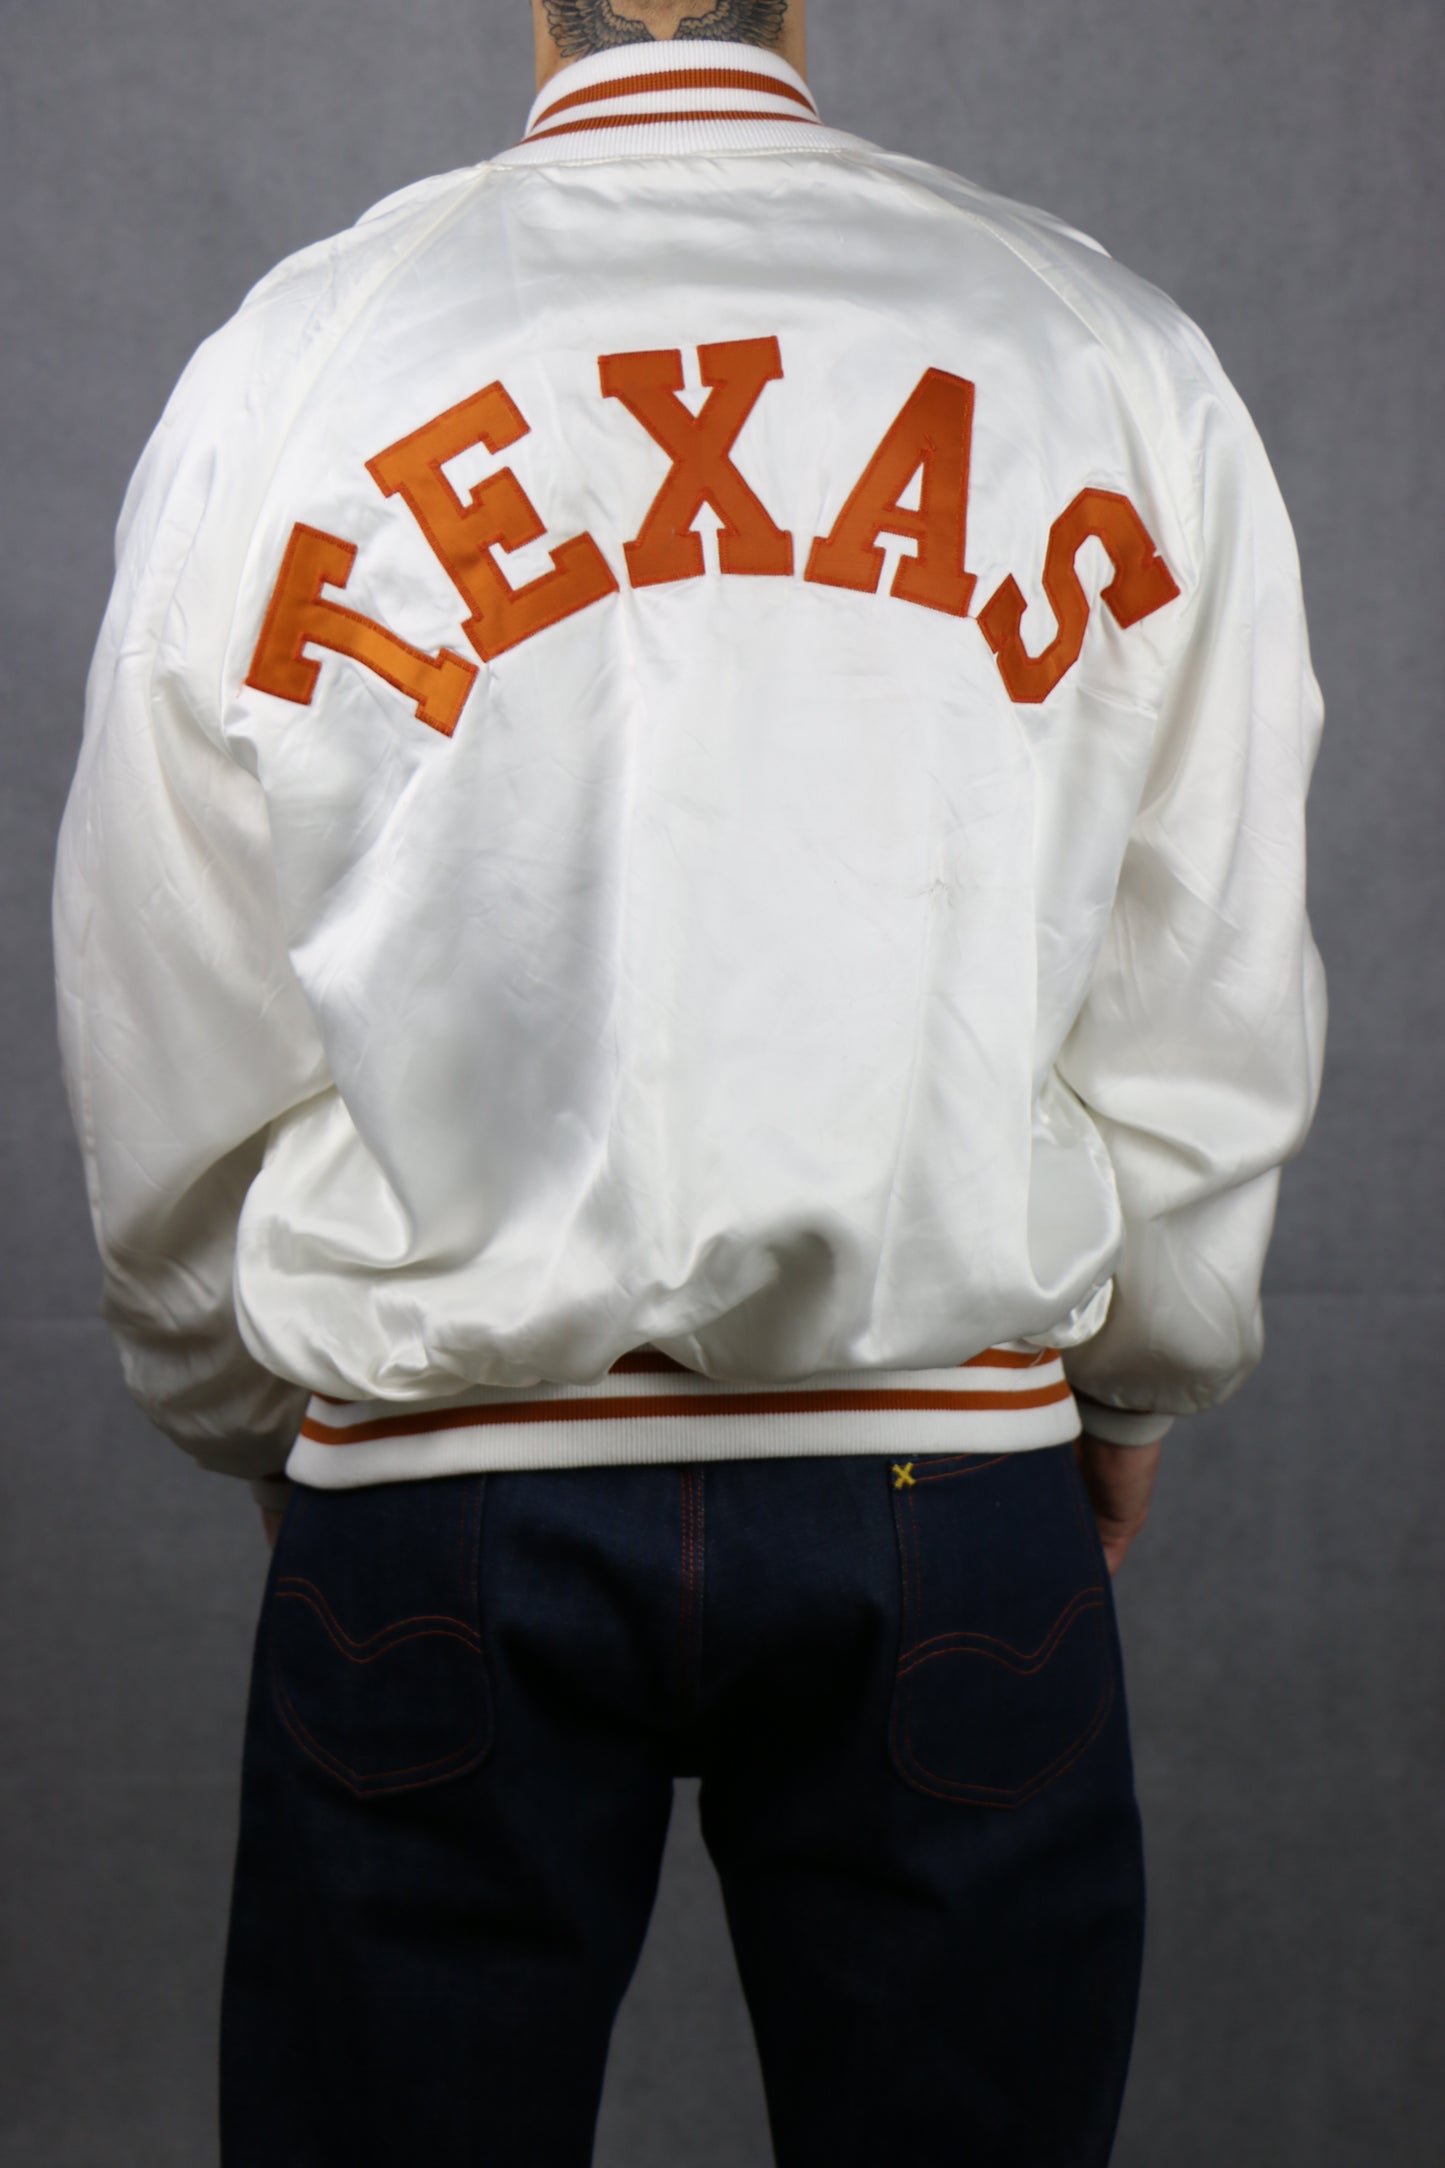 Satin White Bomber Jacket (Texas) - vintage clothing clochard92.com